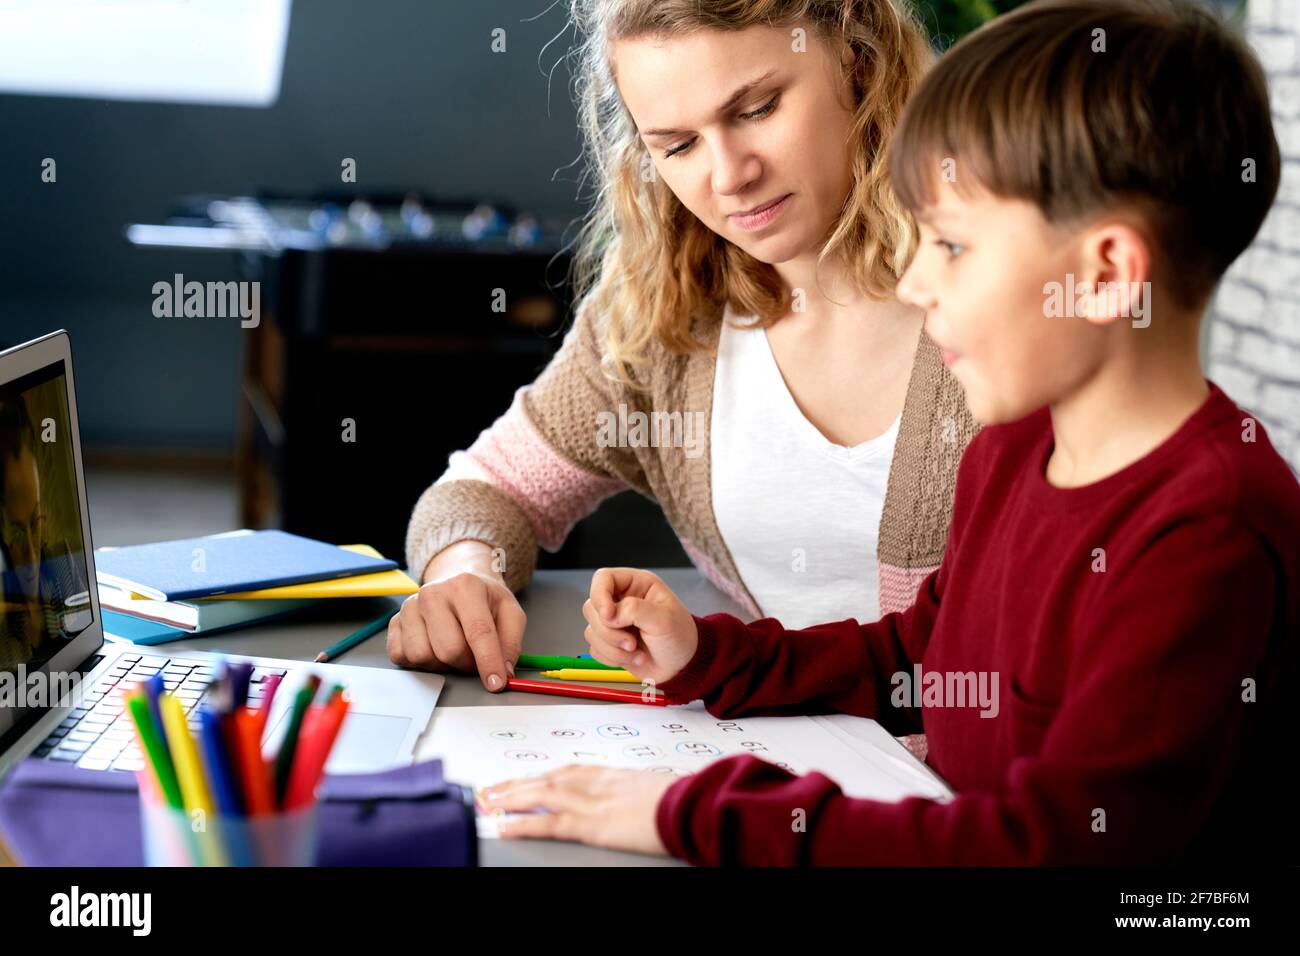 La madre ayuda a su hijo mientras estudia a distancia Foto de stock